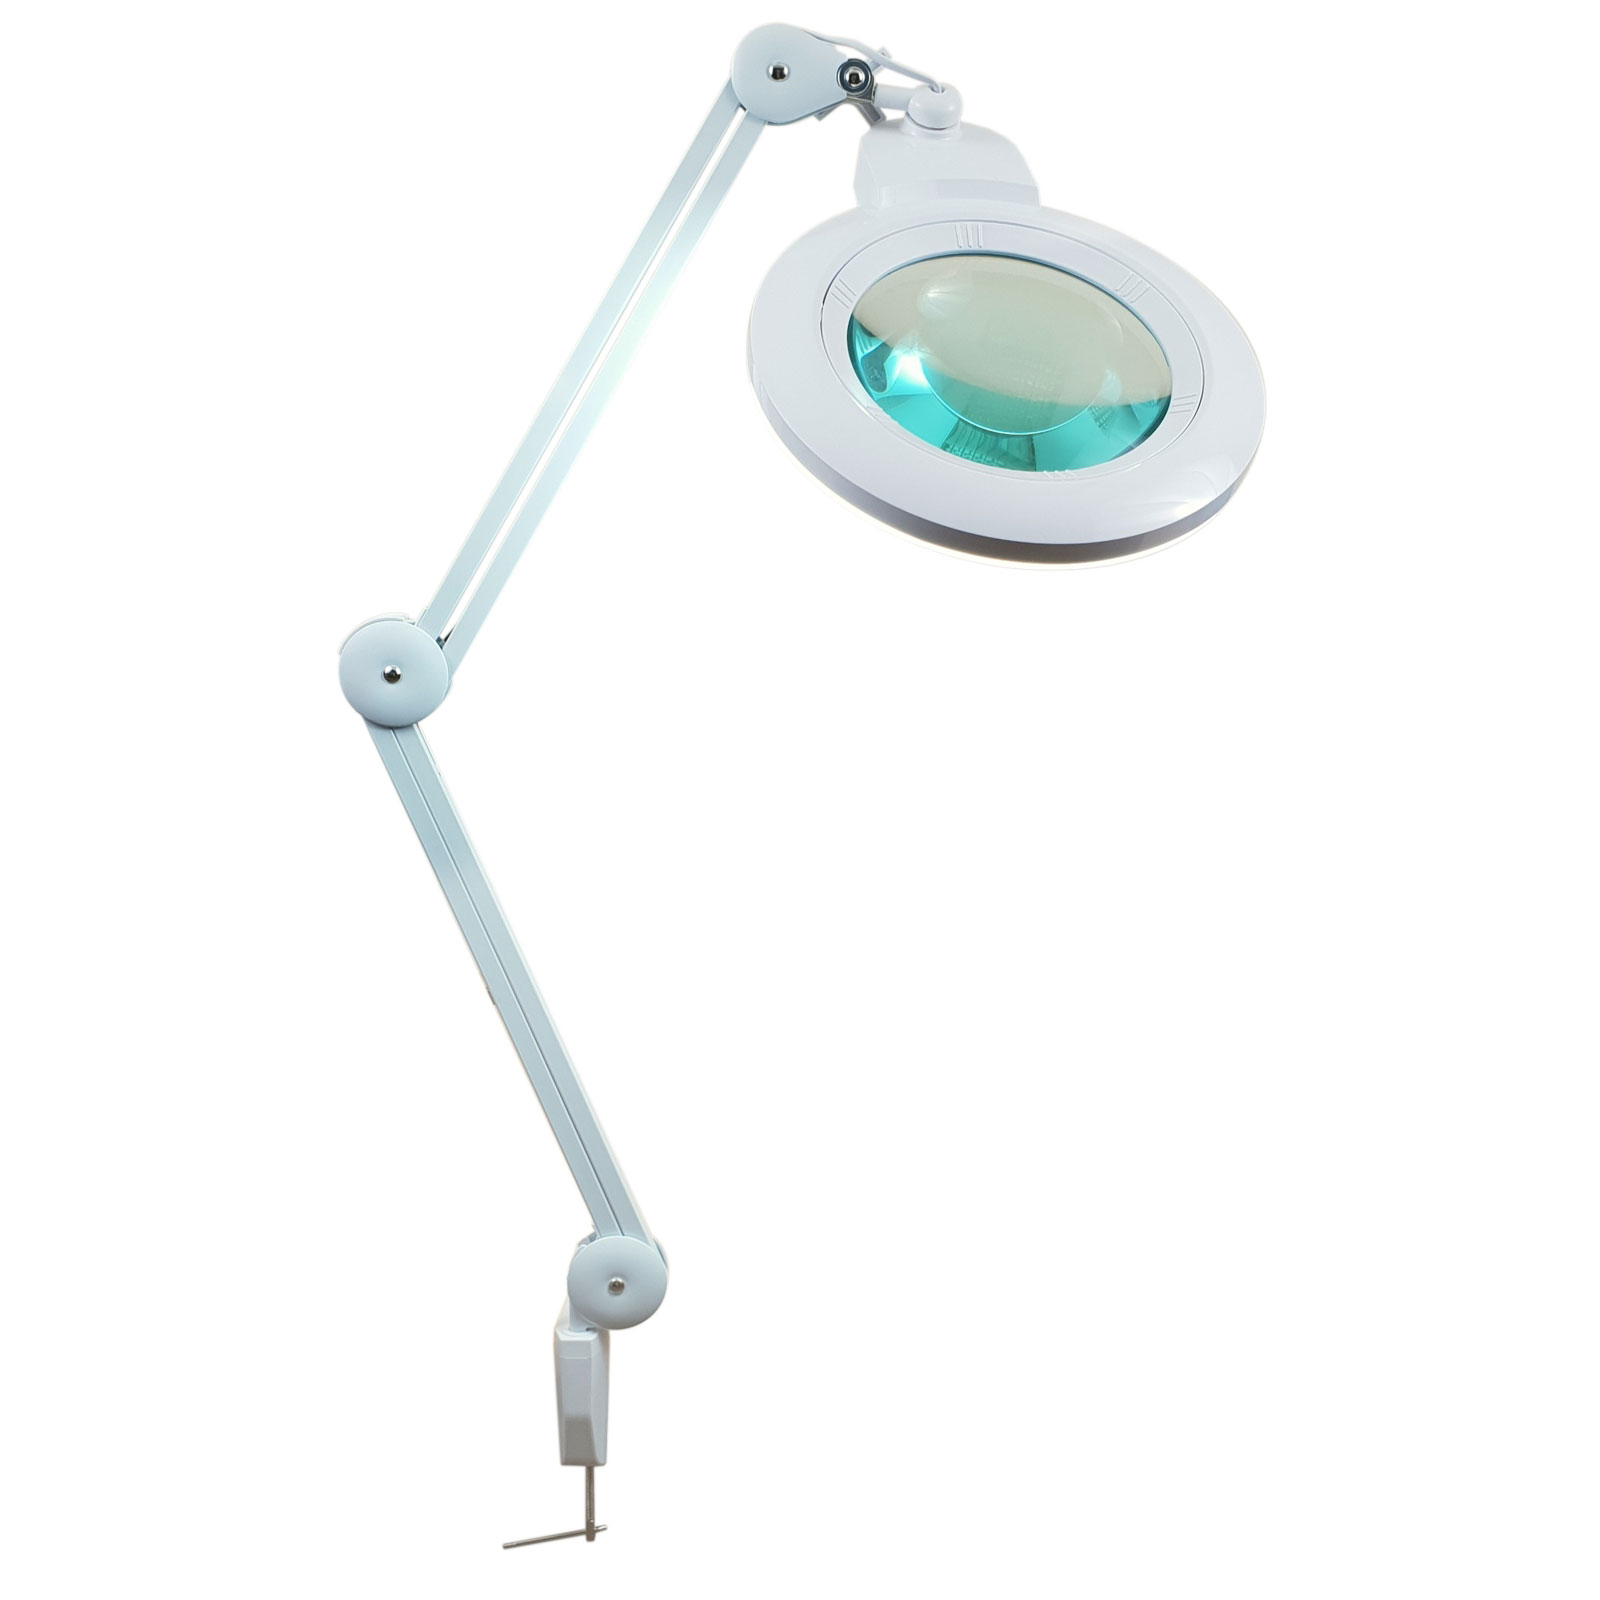 LAM-050, lampa z lupą 5d, lampa 9006LED, lampa ze szkłem powiększającym, lupa z podświetleniem, lupa z oświetleniem, lampa z powiększeniem, Lampa x84 diod LED z lupą o powiększeniu 5D x2,25, LAM-023,